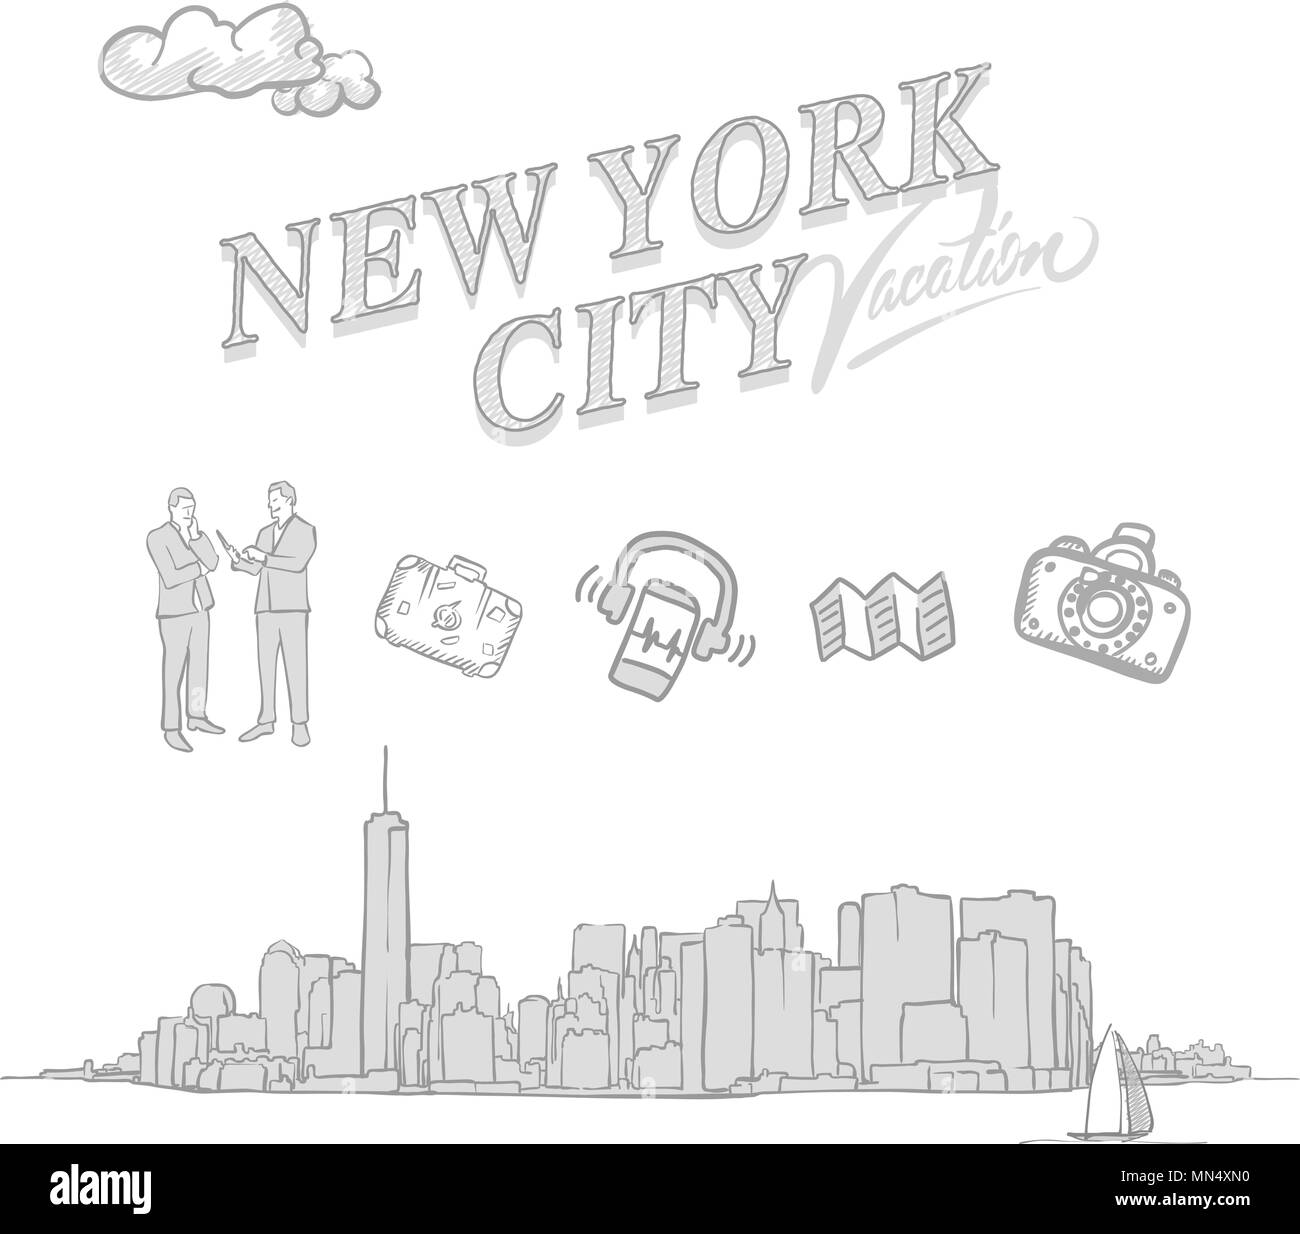 New York City travel bozzetti, set disegnati a mano a disegni vettoriali. Illustrazione Vettoriale